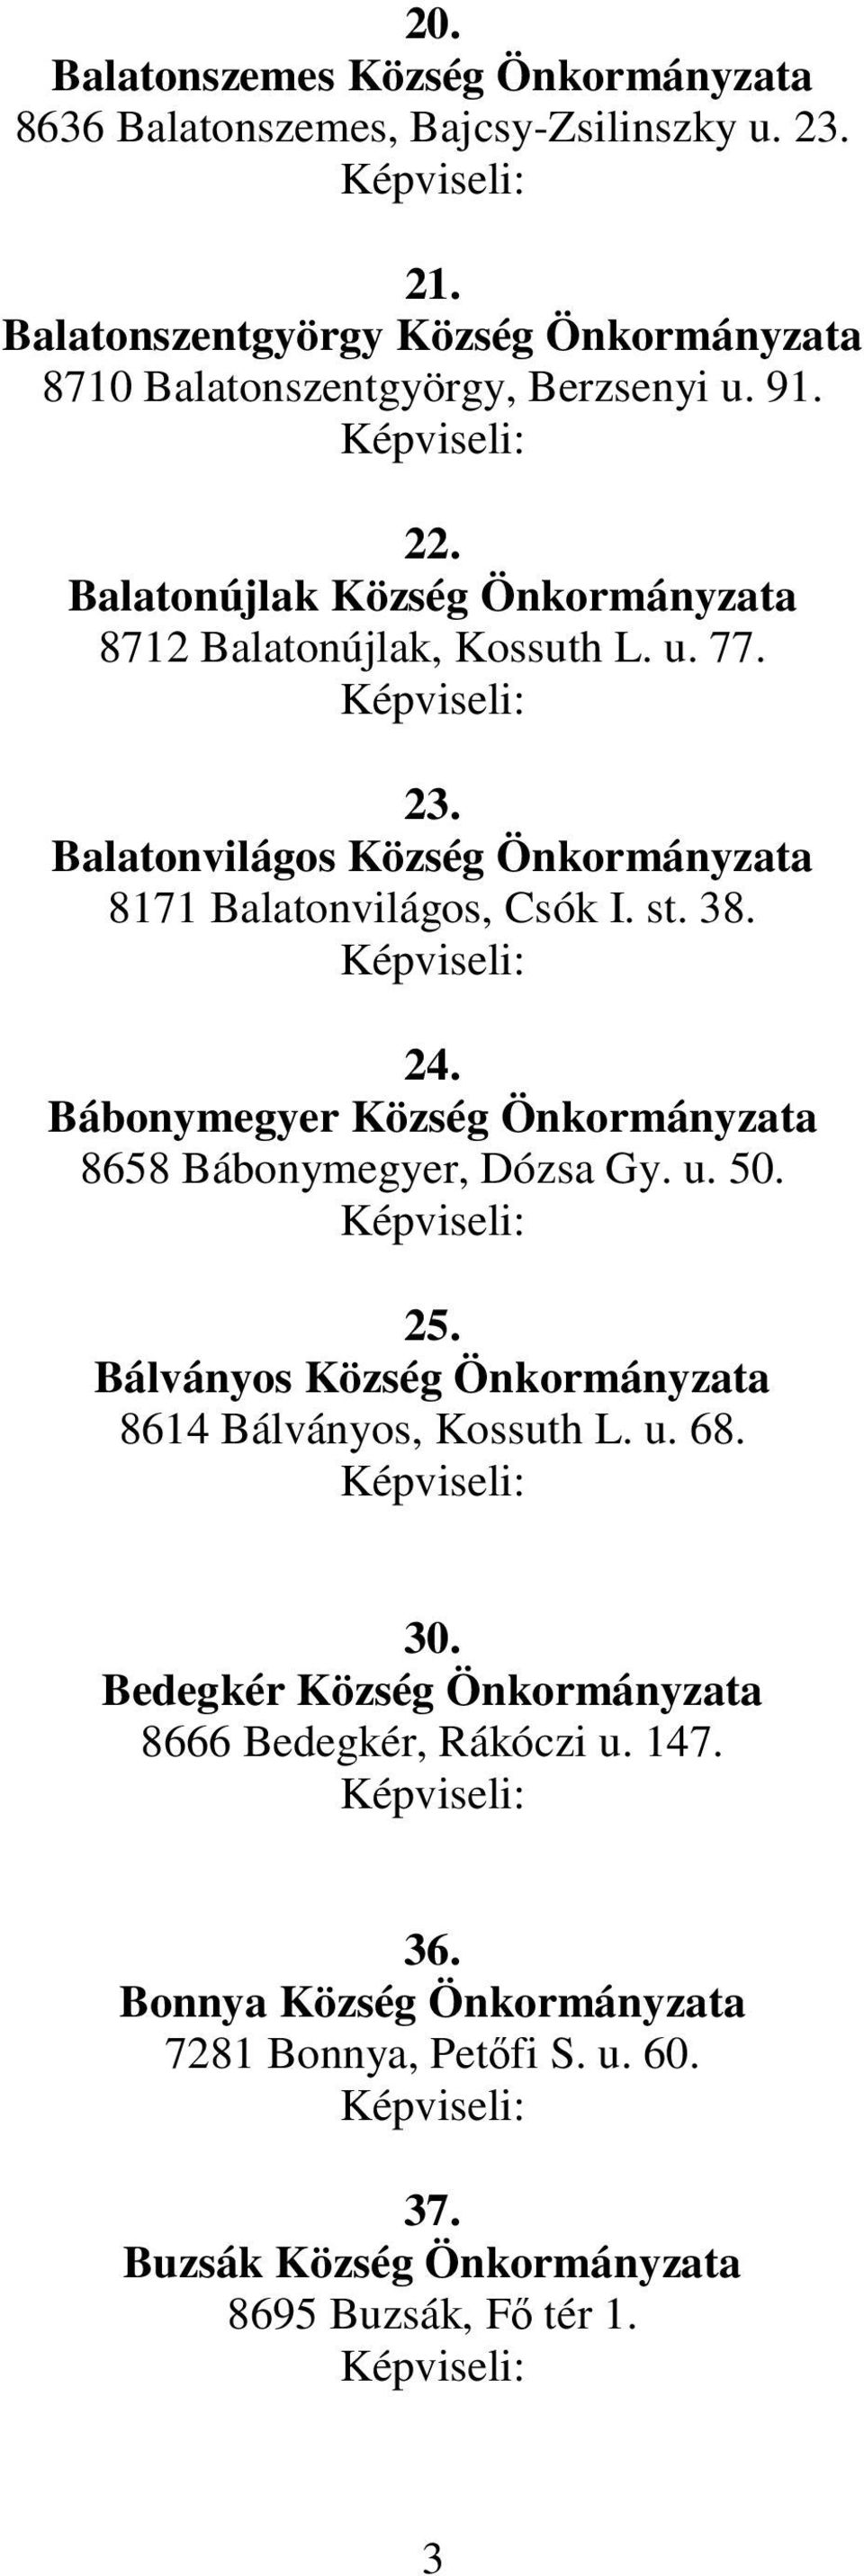 Balatonvilágos Község Önkormányzata 8171 Balatonvilágos, Csók I. st. 38. 24. Bábonymegyer Község Önkormányzata 8658 Bábonymegyer, Dózsa Gy. u. 50. 25.